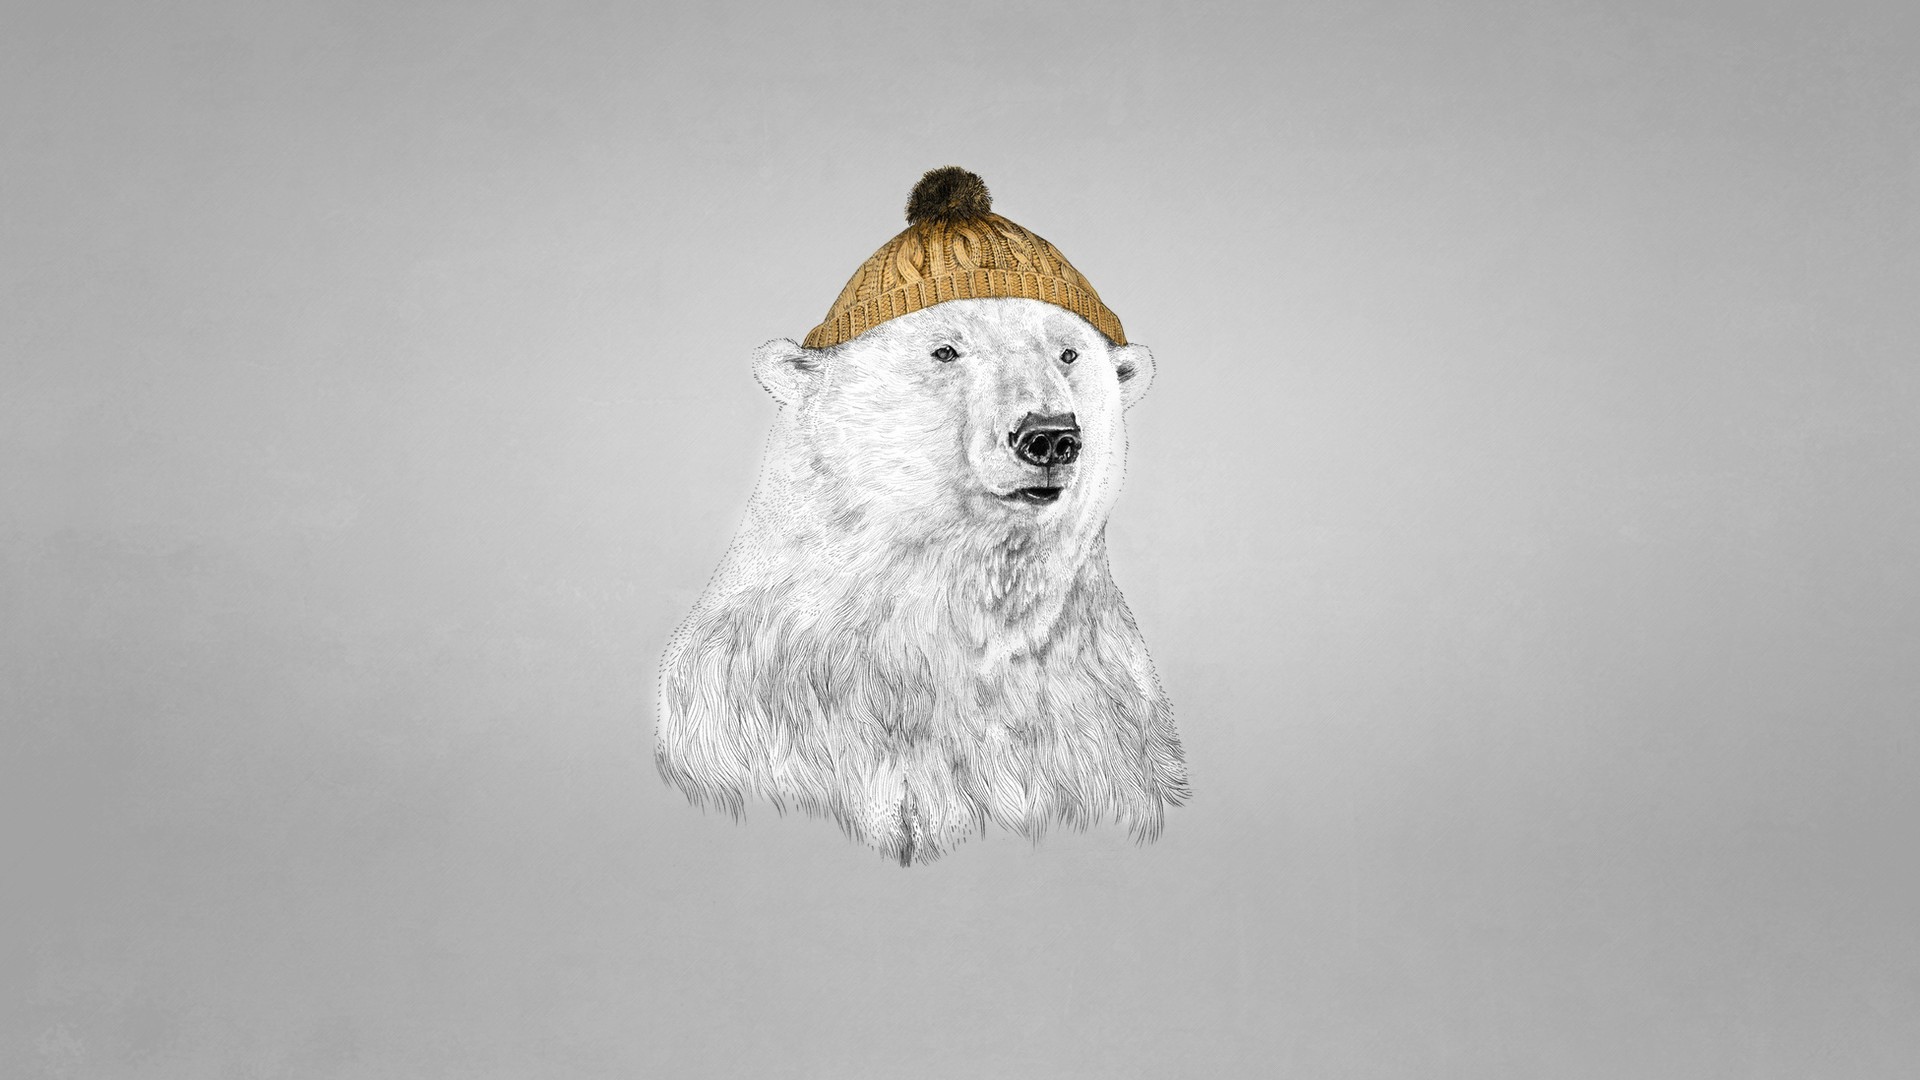 Polar bear in a cap